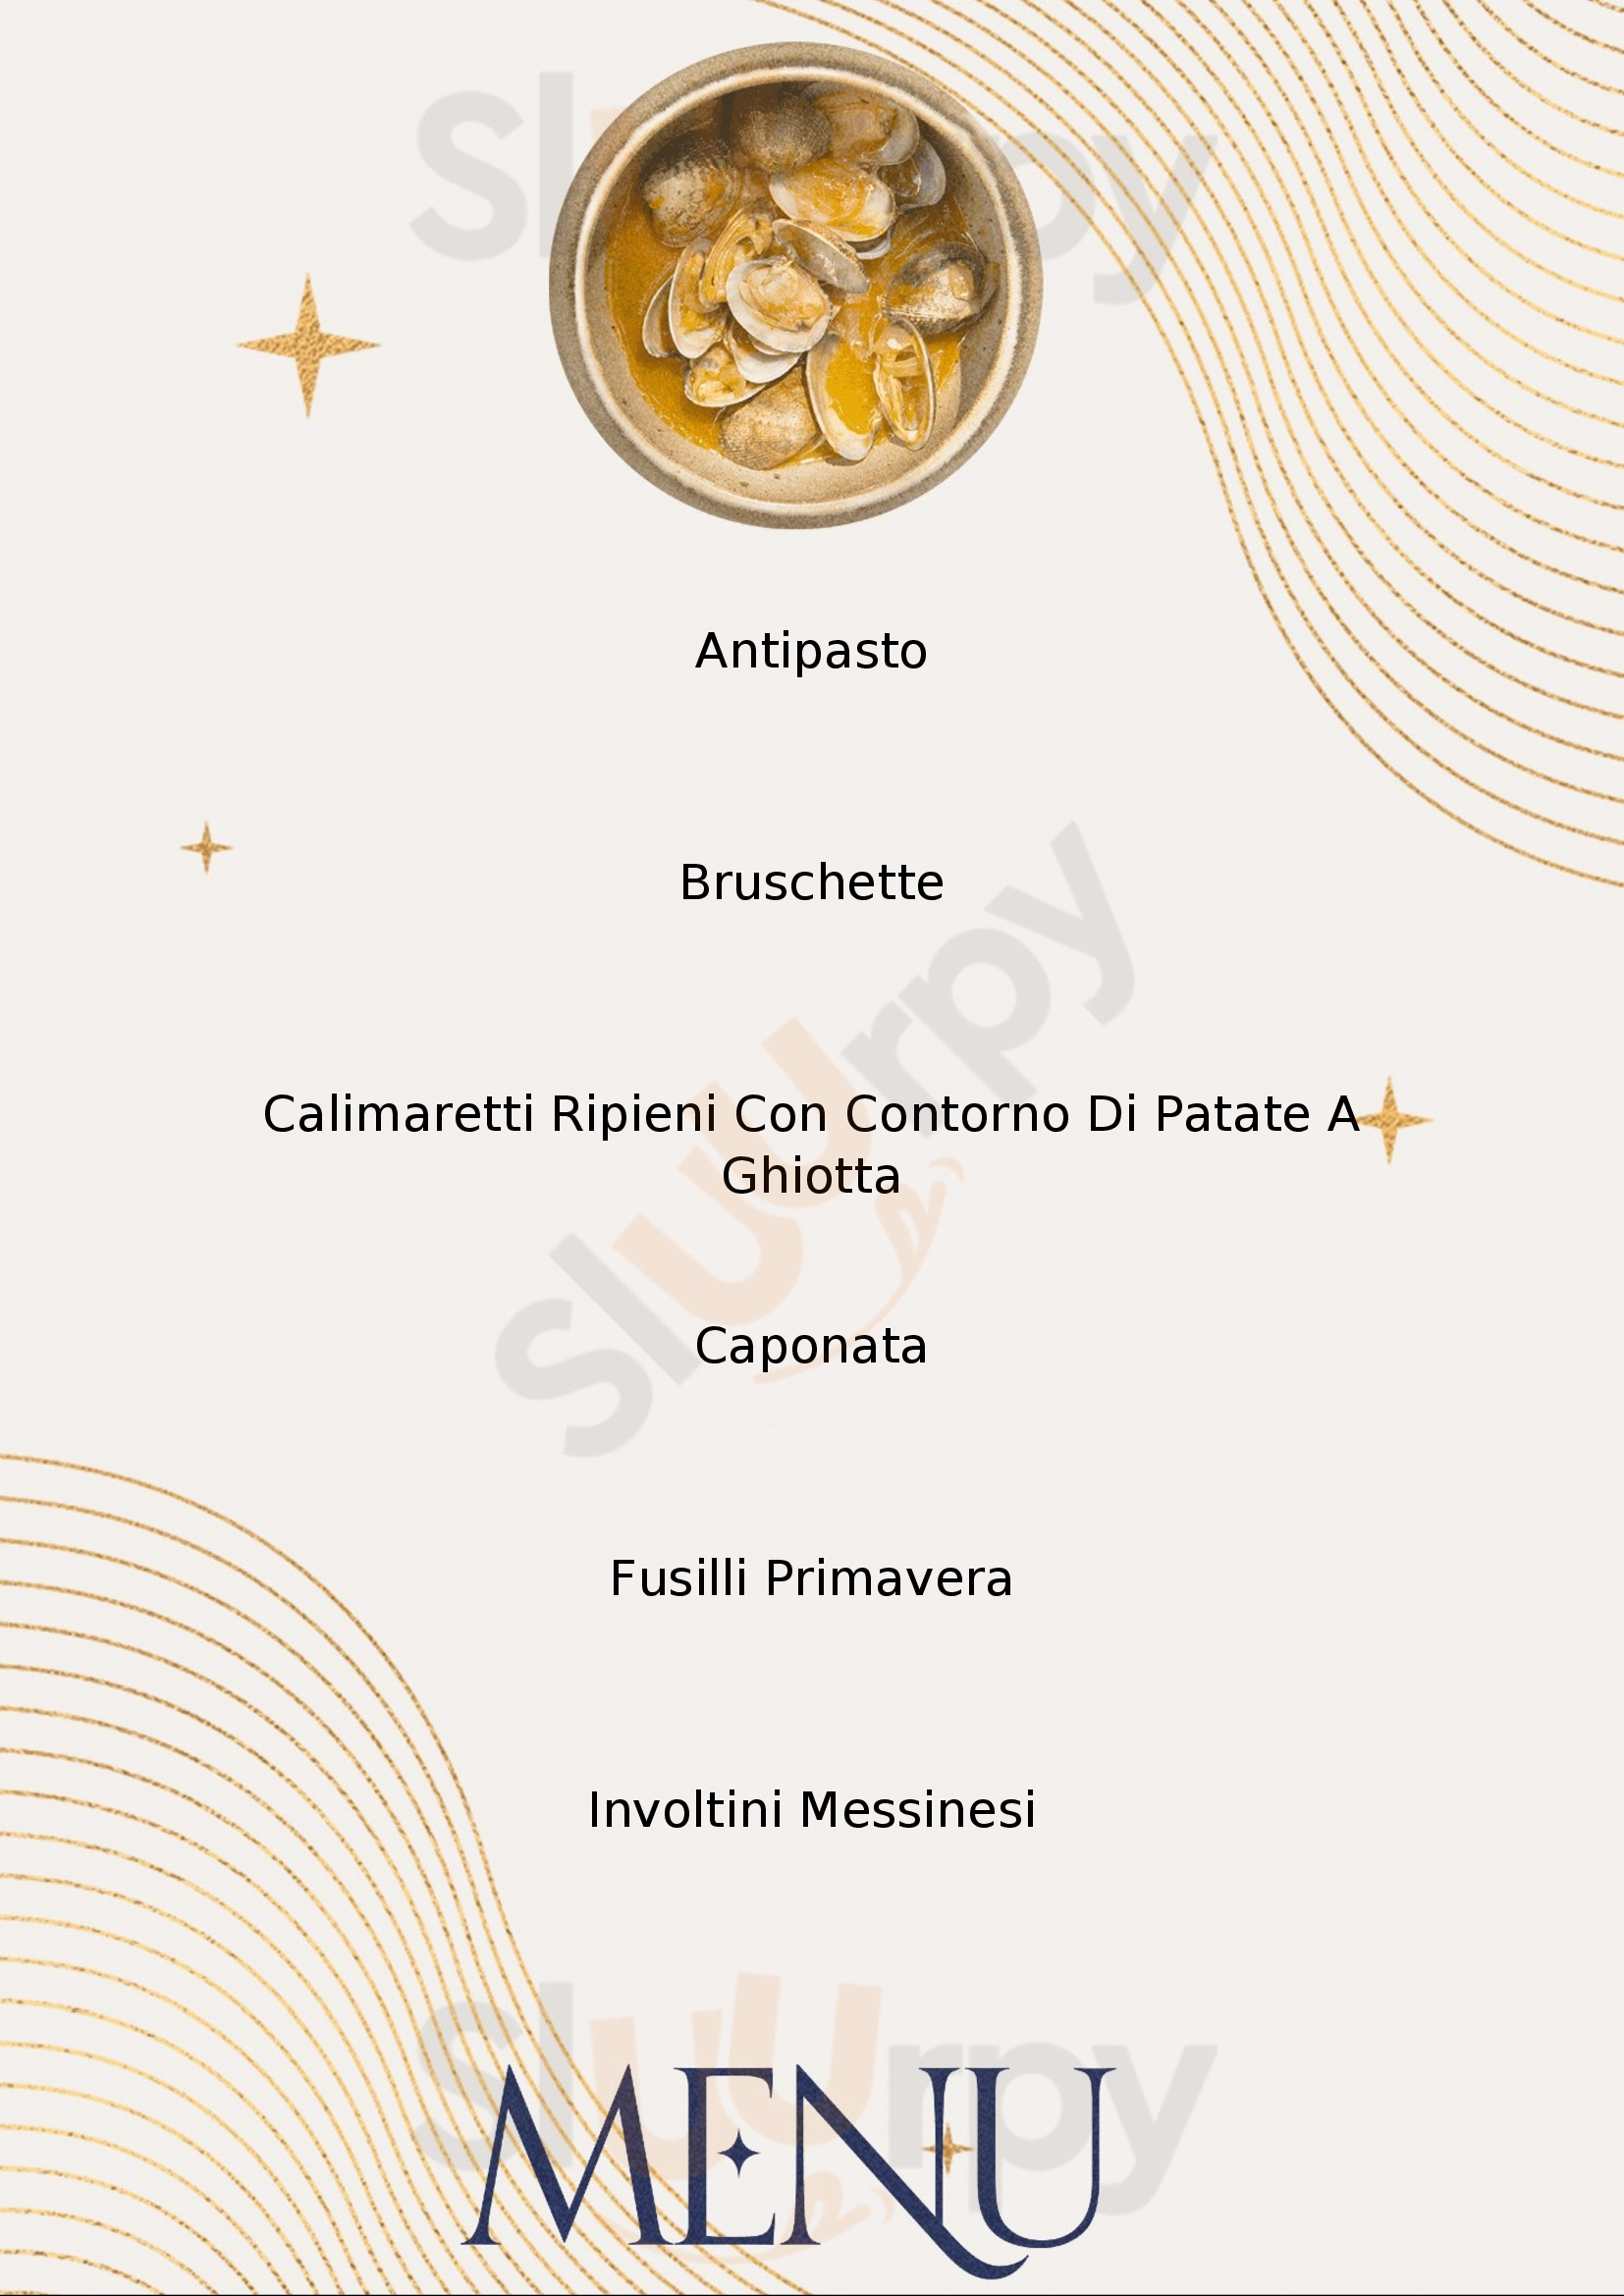 Rocky's Ristorante - Gastronomia Venetico menù 1 pagina